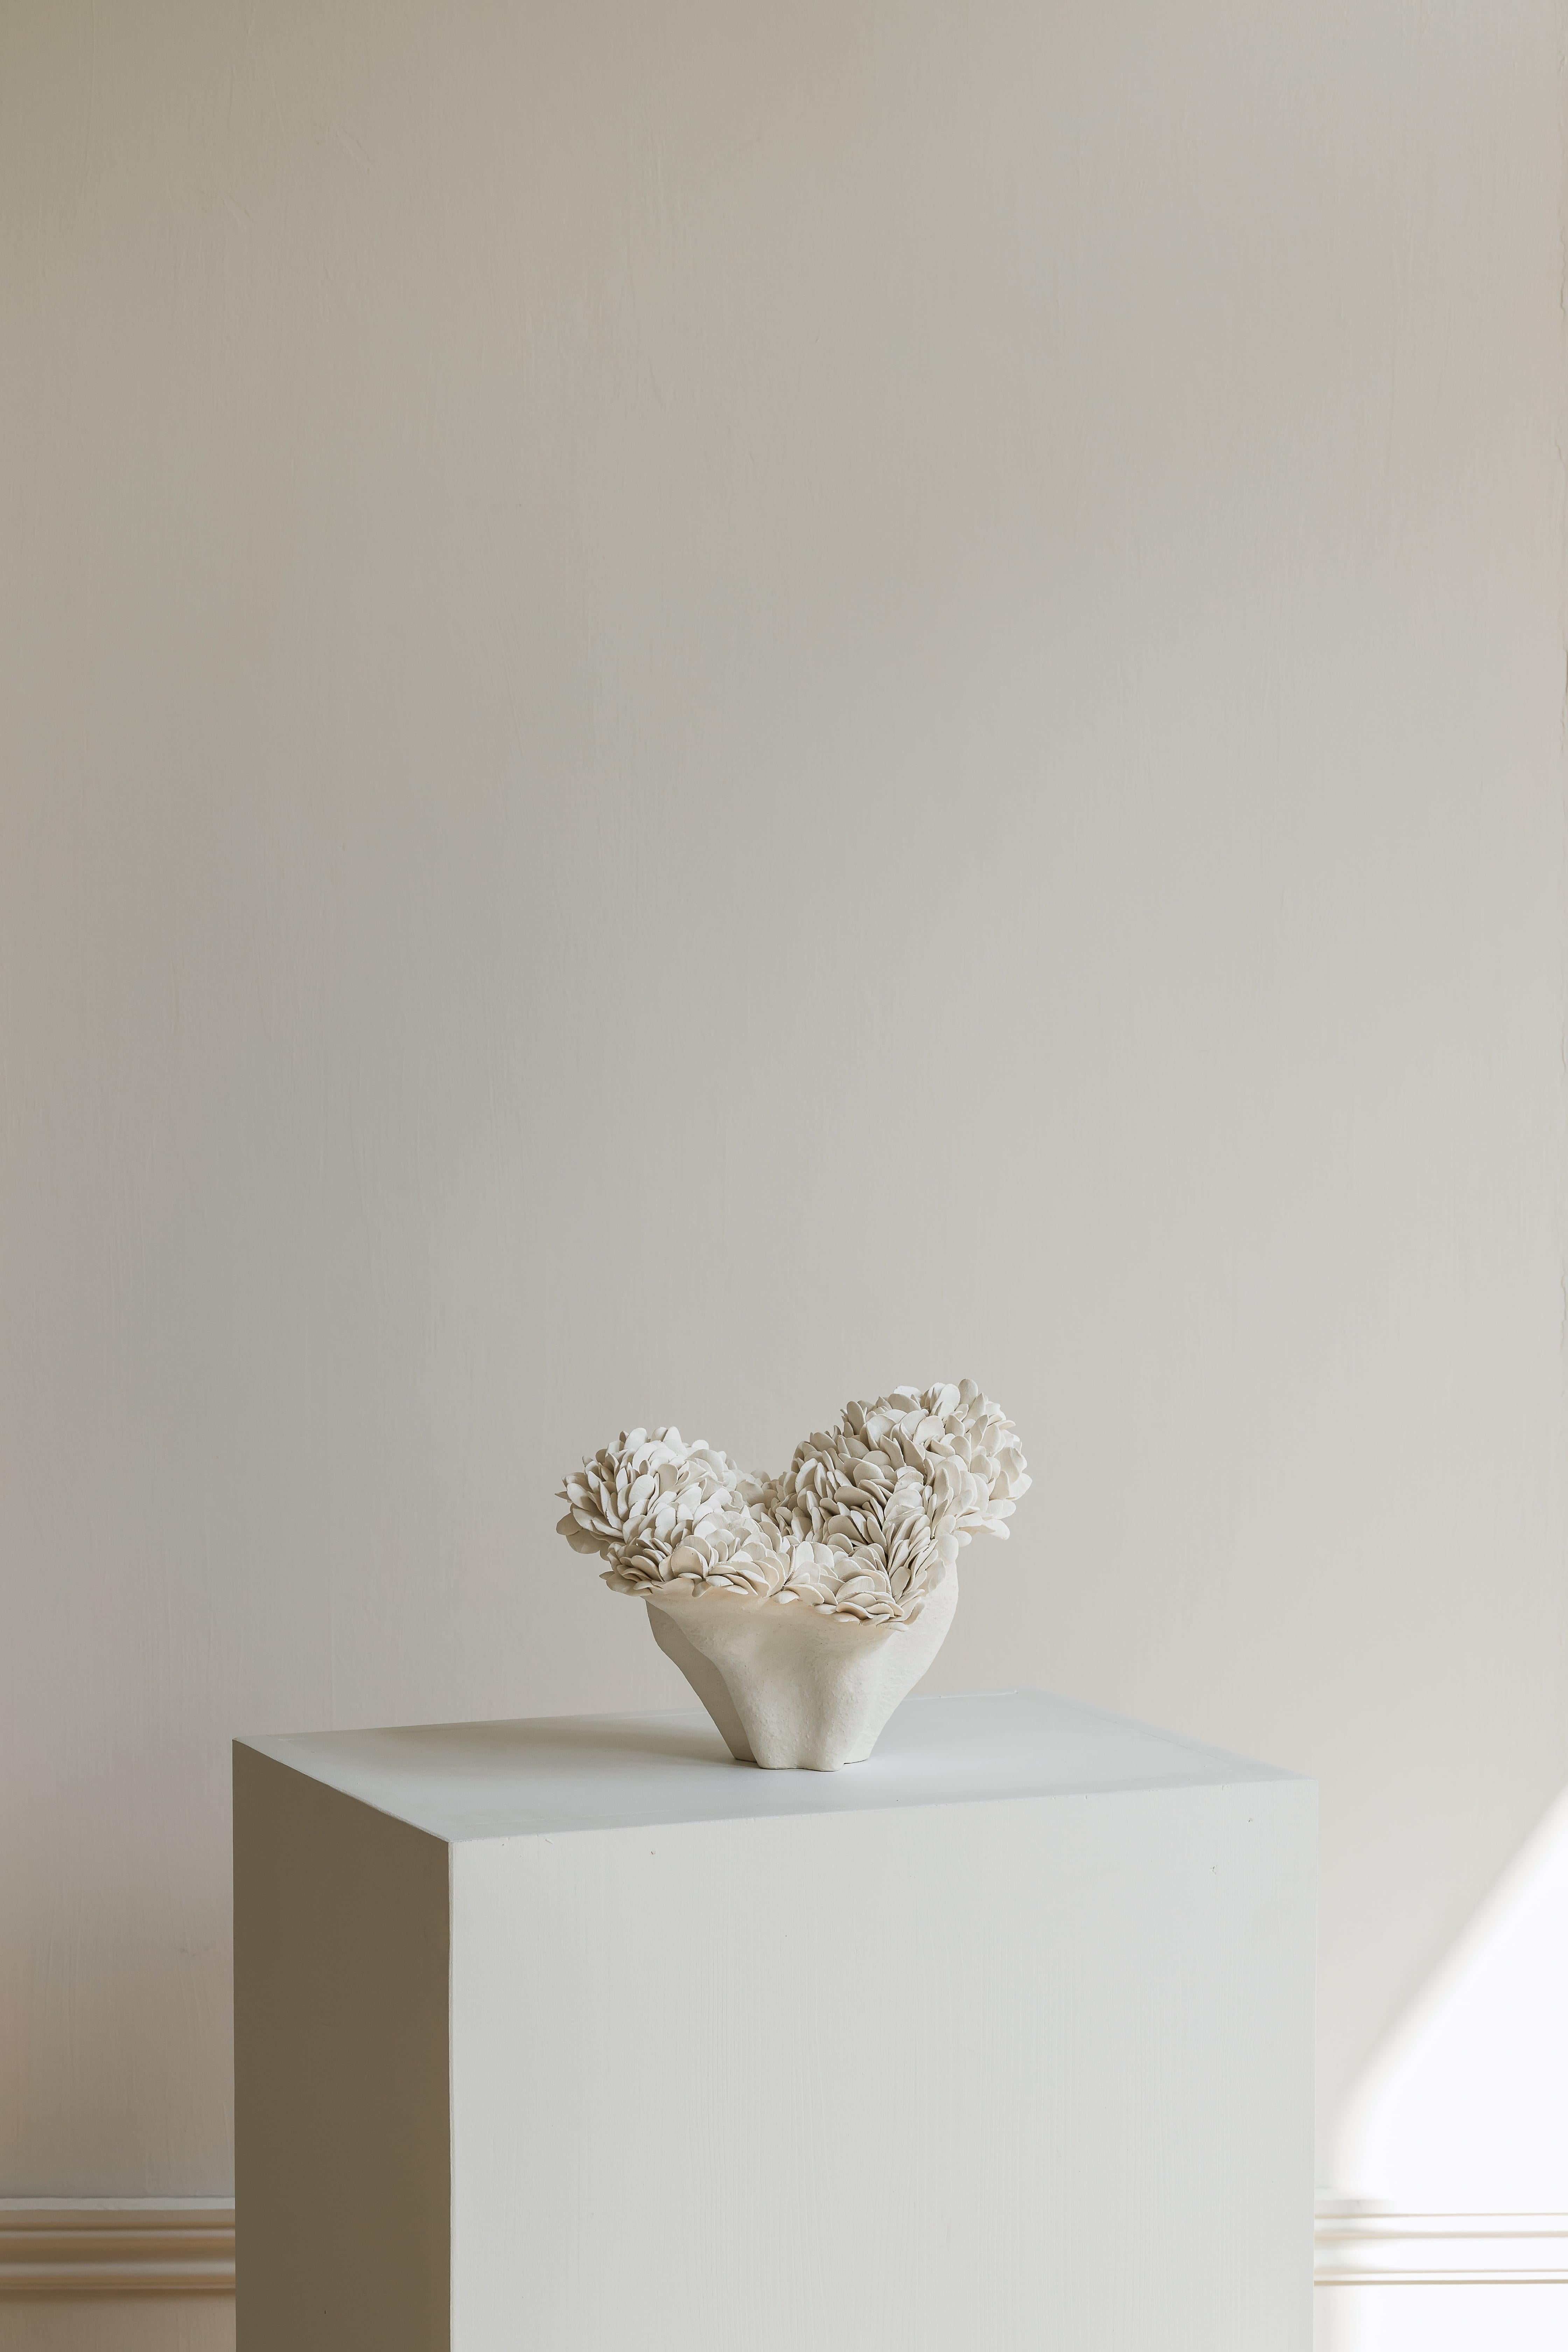 Post-Modern Nubes Medium Sculpture by Hanna Heino